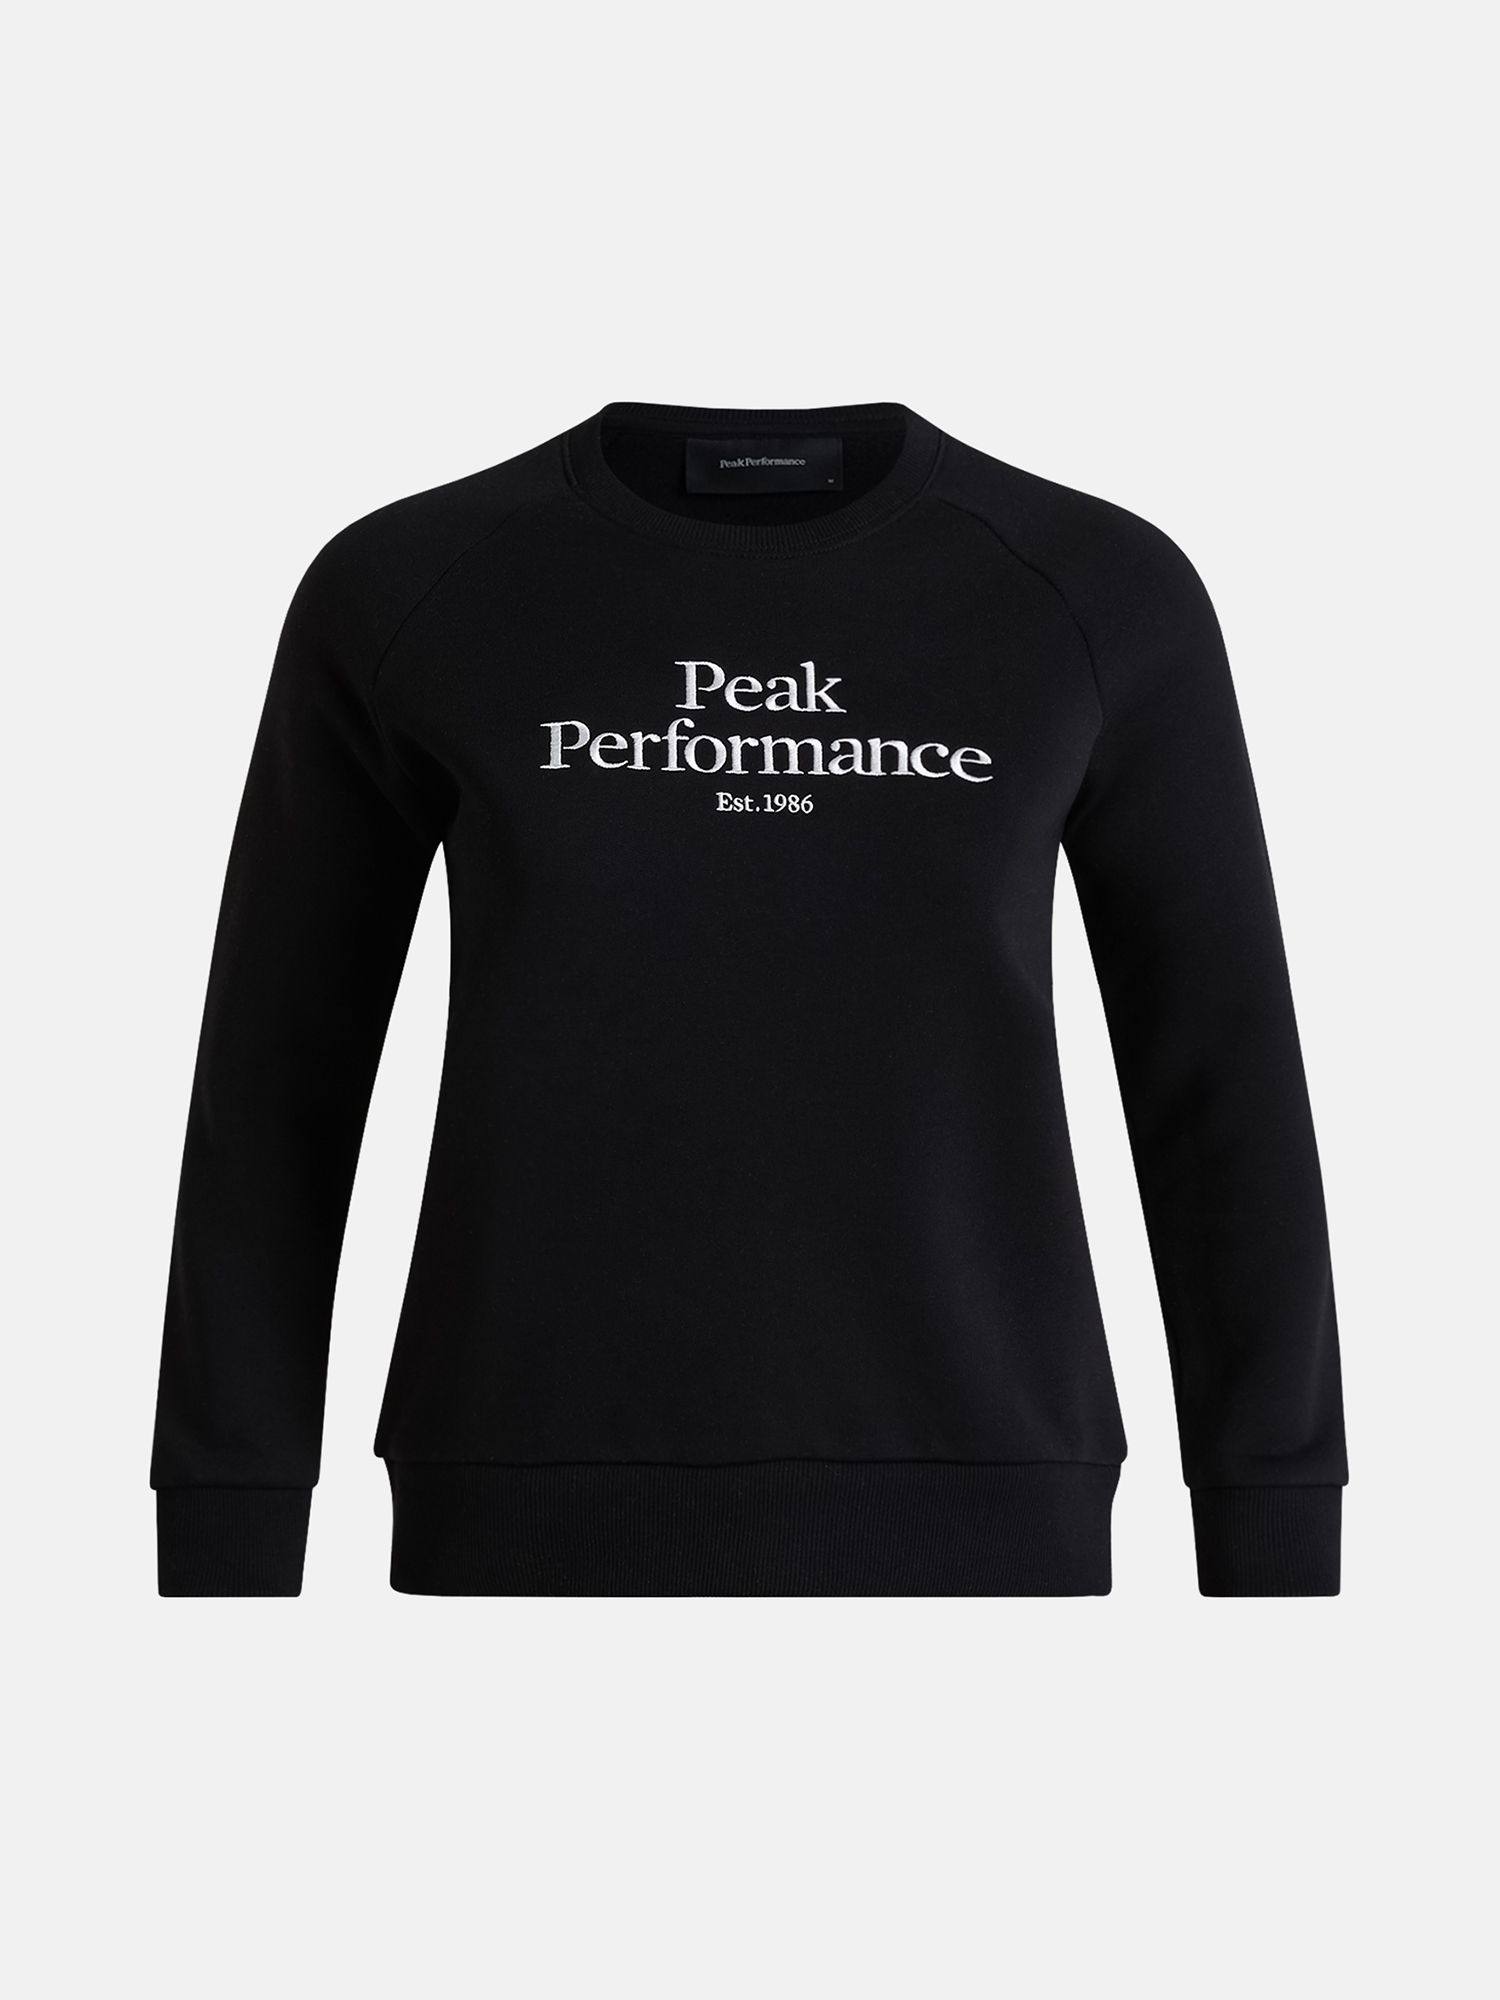 Peak Performance Women’s Original Crew Black L